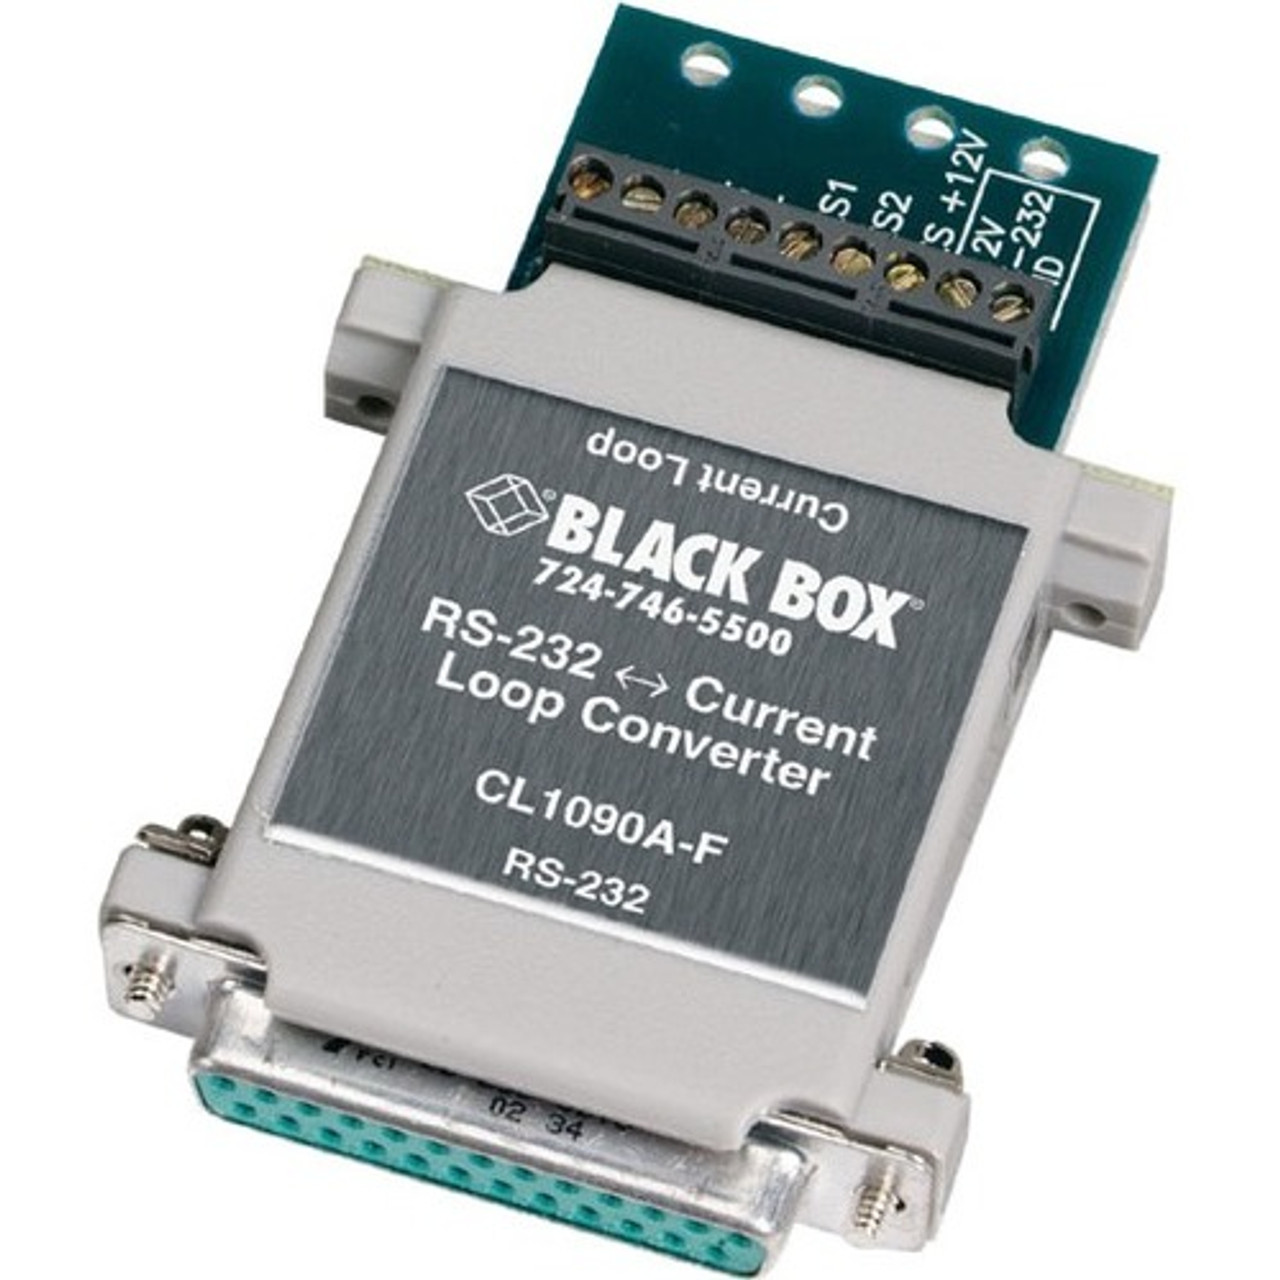 Black Box CL1090A-F